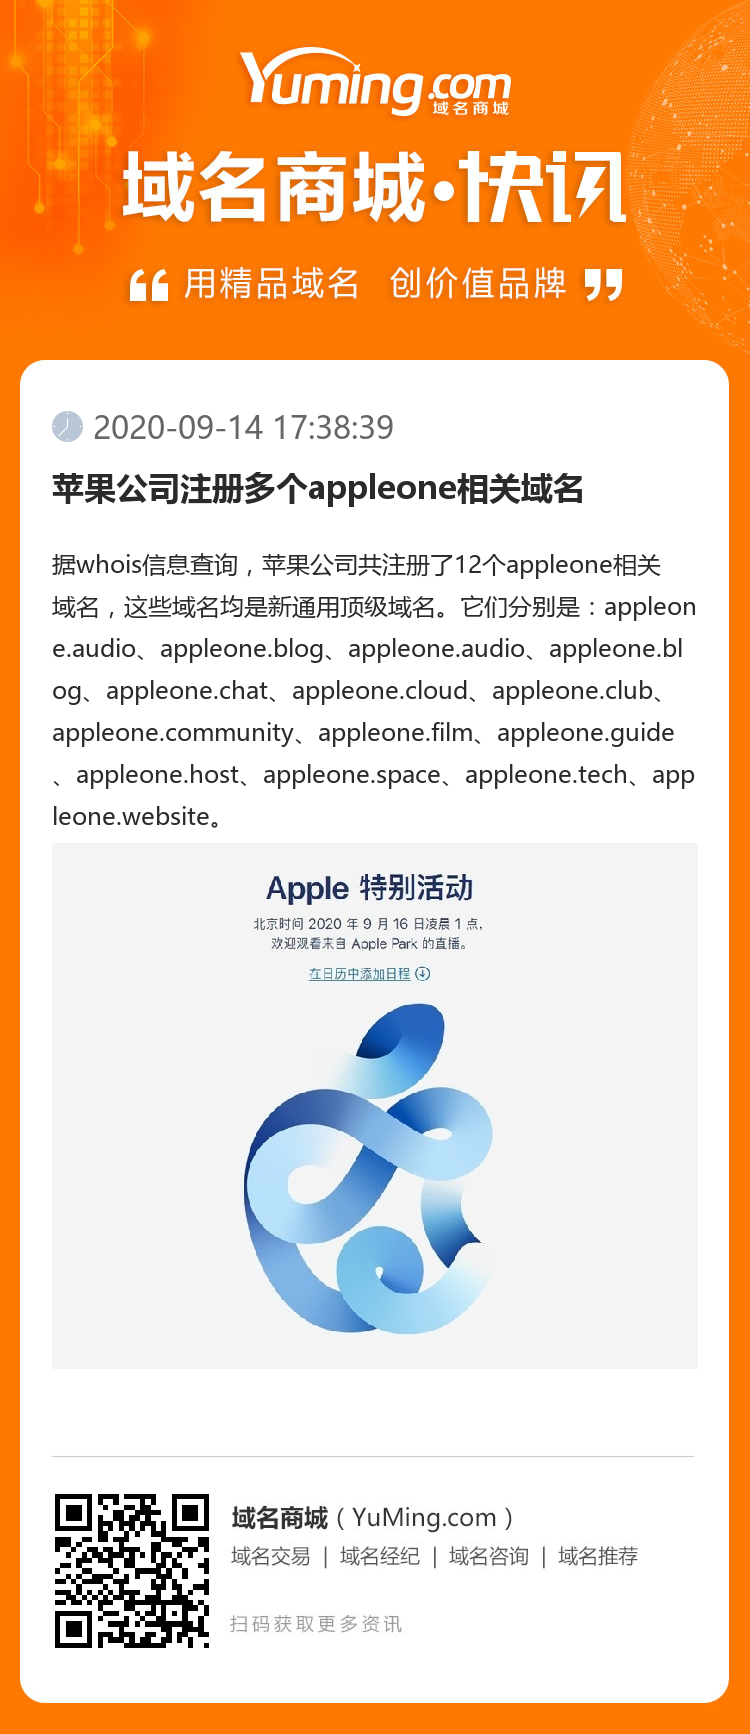 苹果公司注册多个appleone相关域名